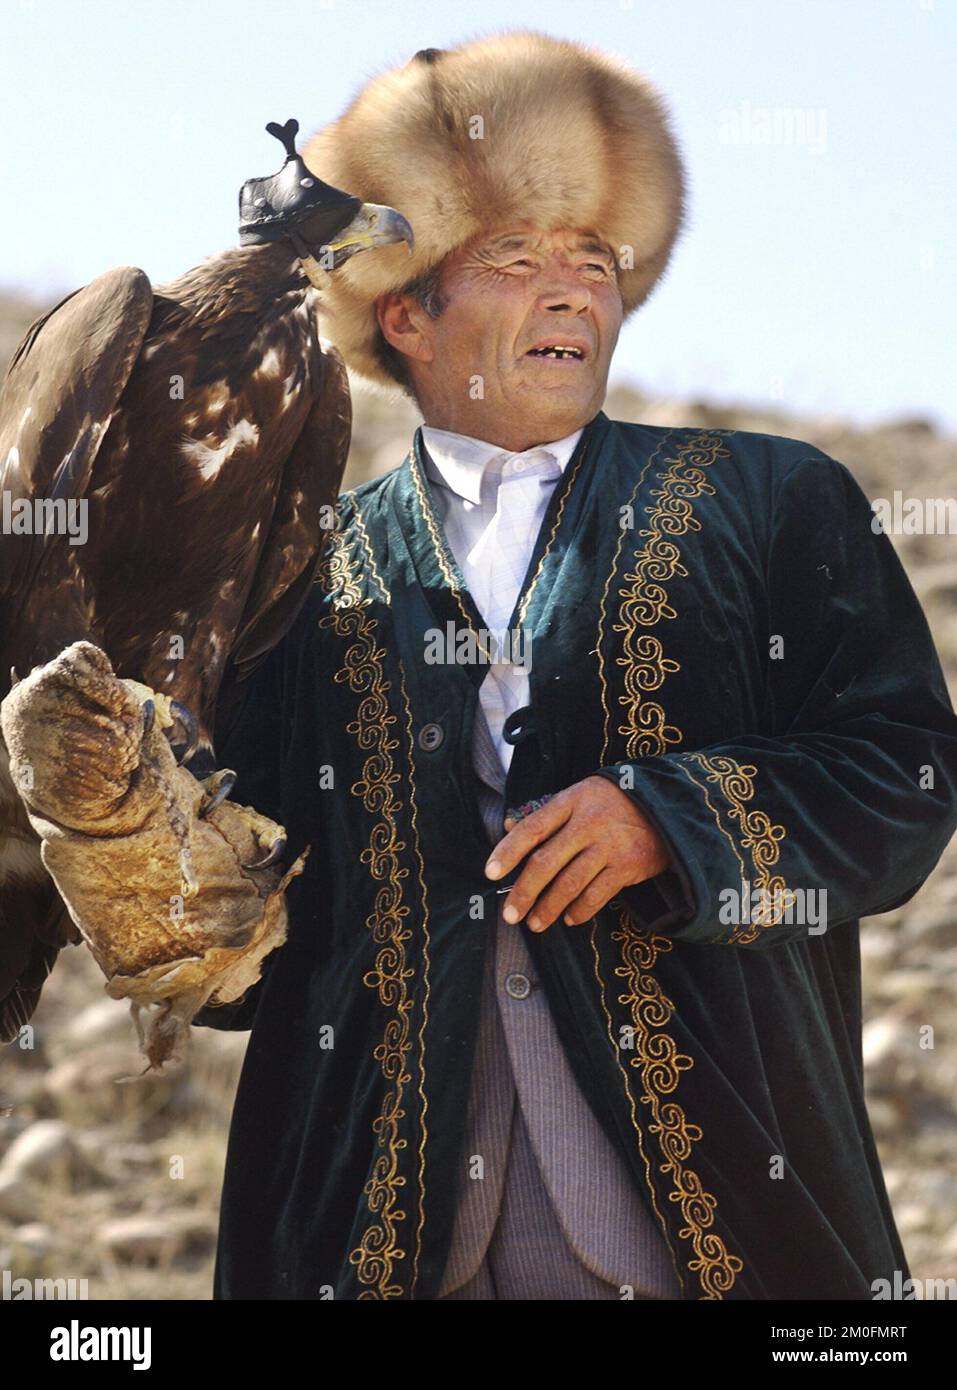 PA PHOTO/POLFOTO - UK USO EXCLUSIVO : KAZAKSTÁN 2002. Los últimos cazadores de águilas del mundo. En Kazakstán un hombre es un hombre cuando puede montar a caballo y cazar con un águila. Lo han hecho de la misma manera durante los últimos 4000 años. Foto de stock